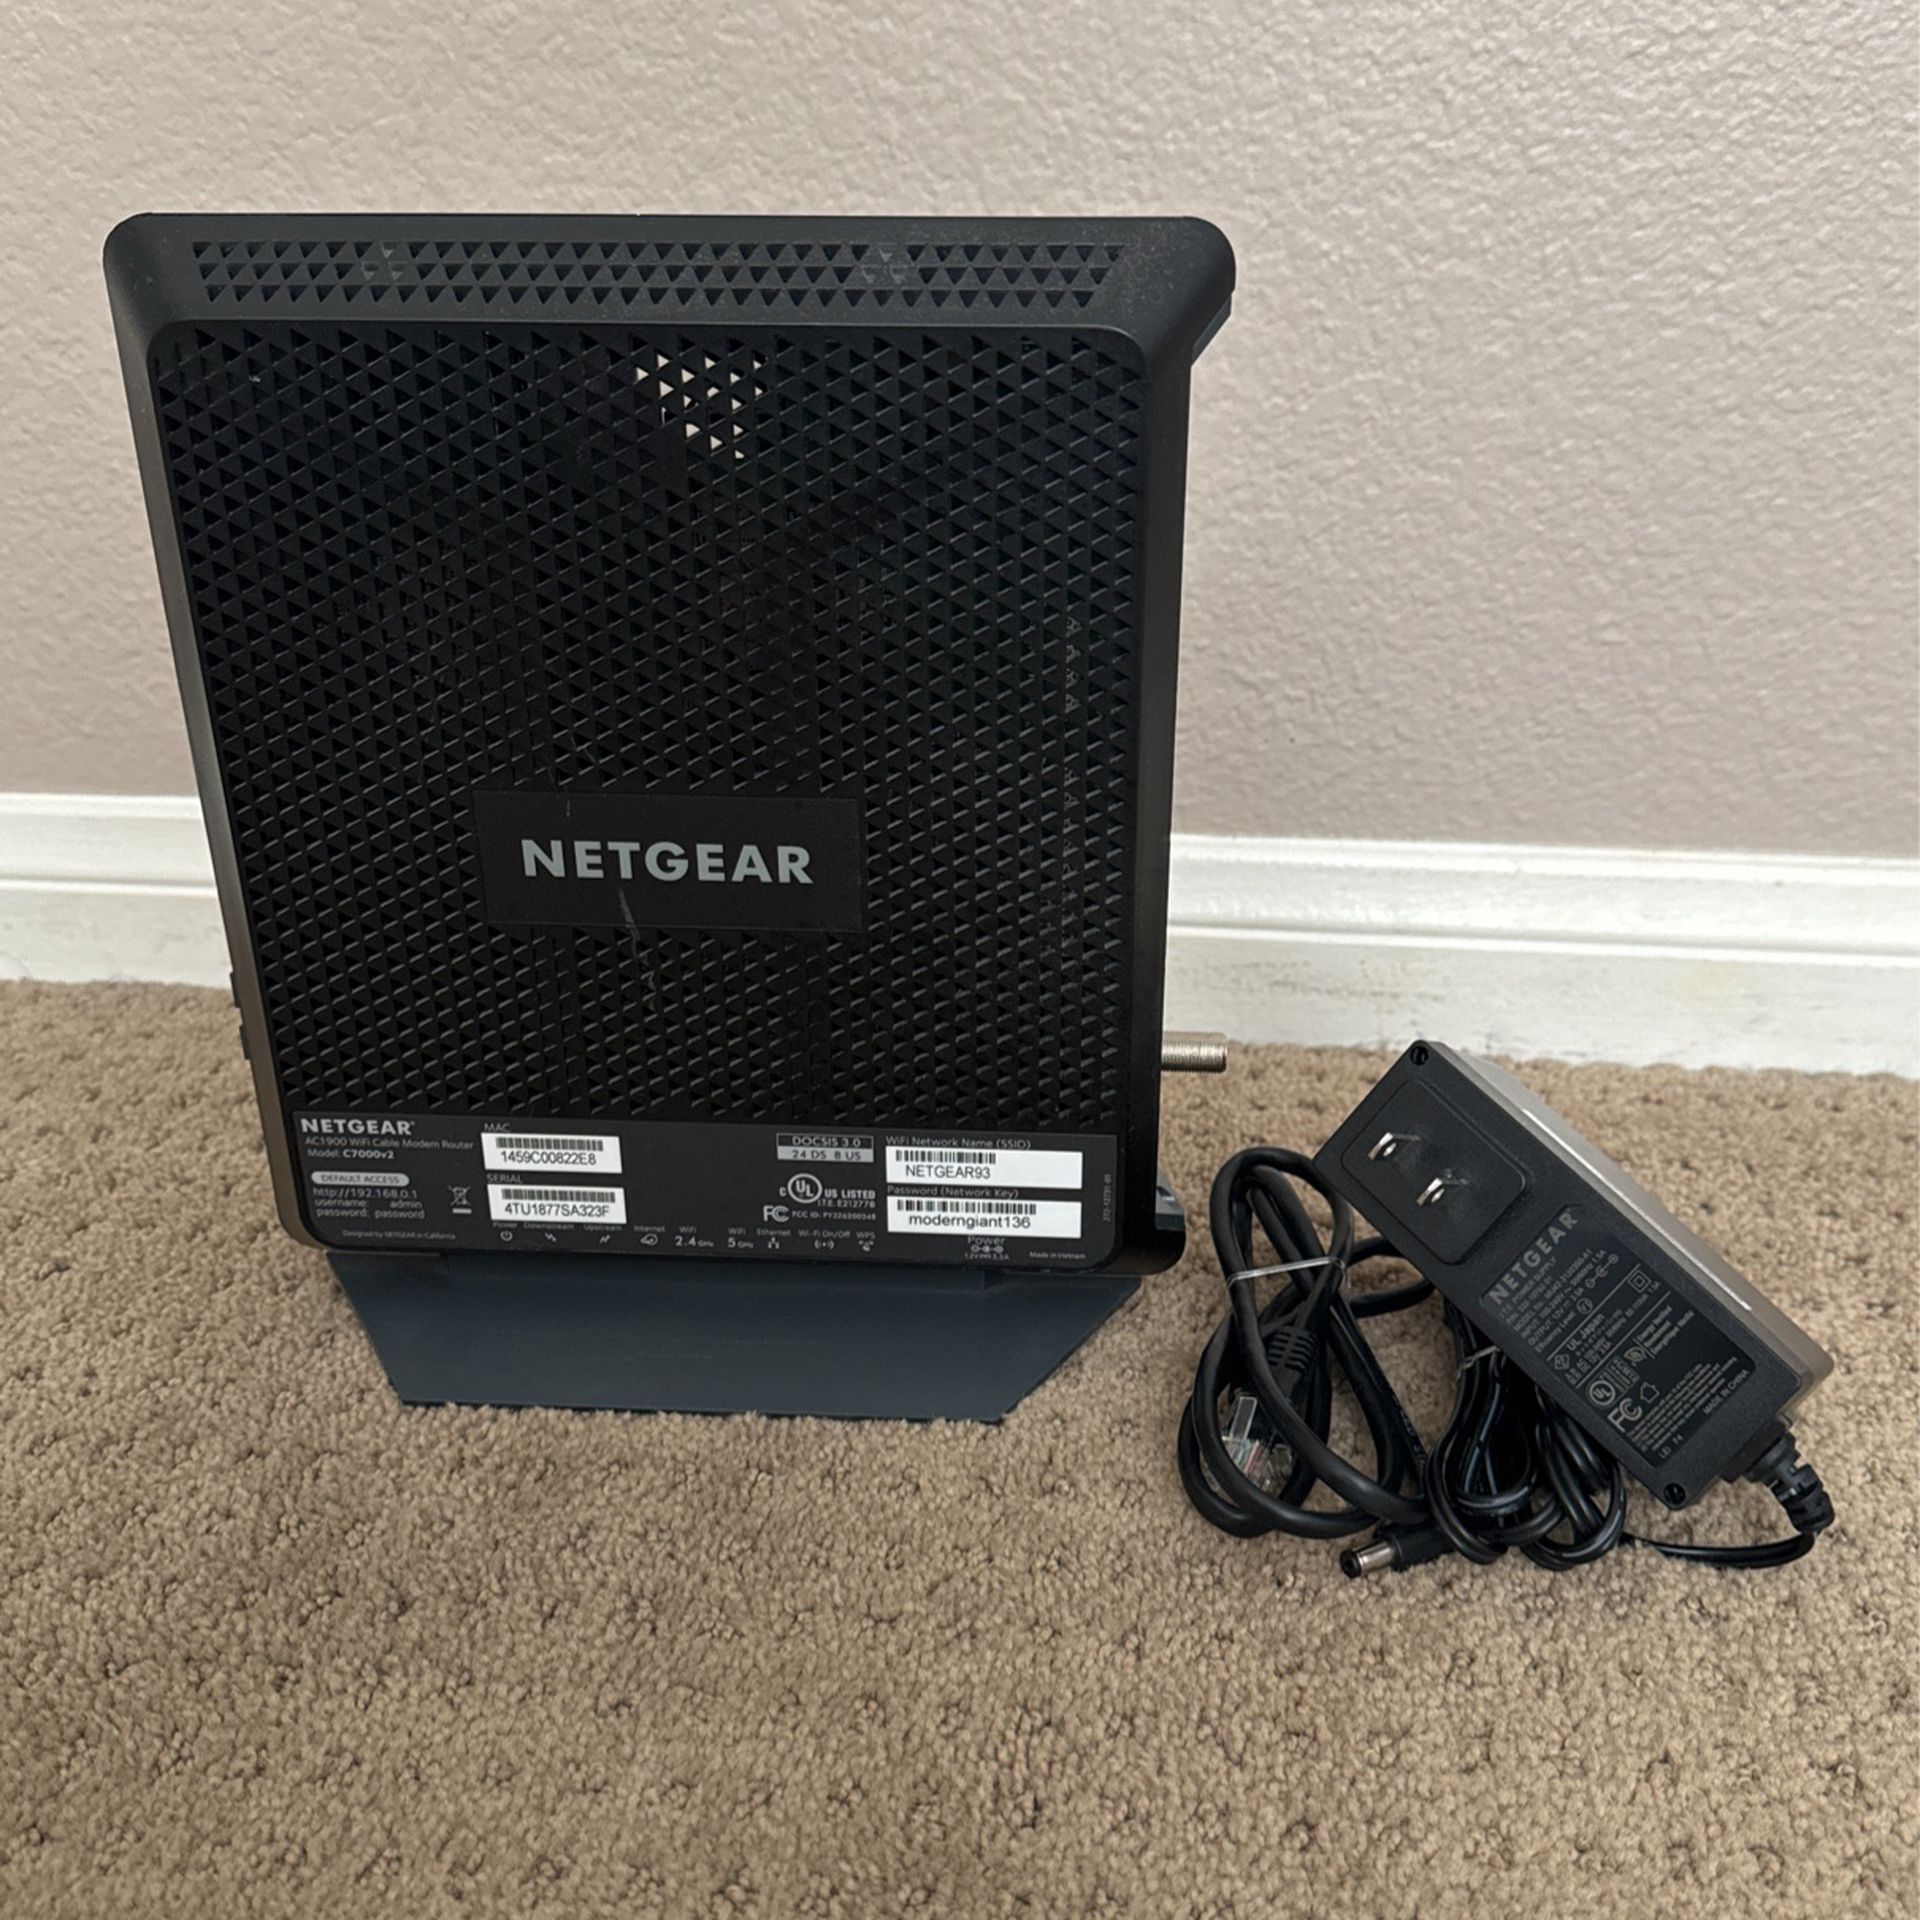 Netgear AC1900 Router